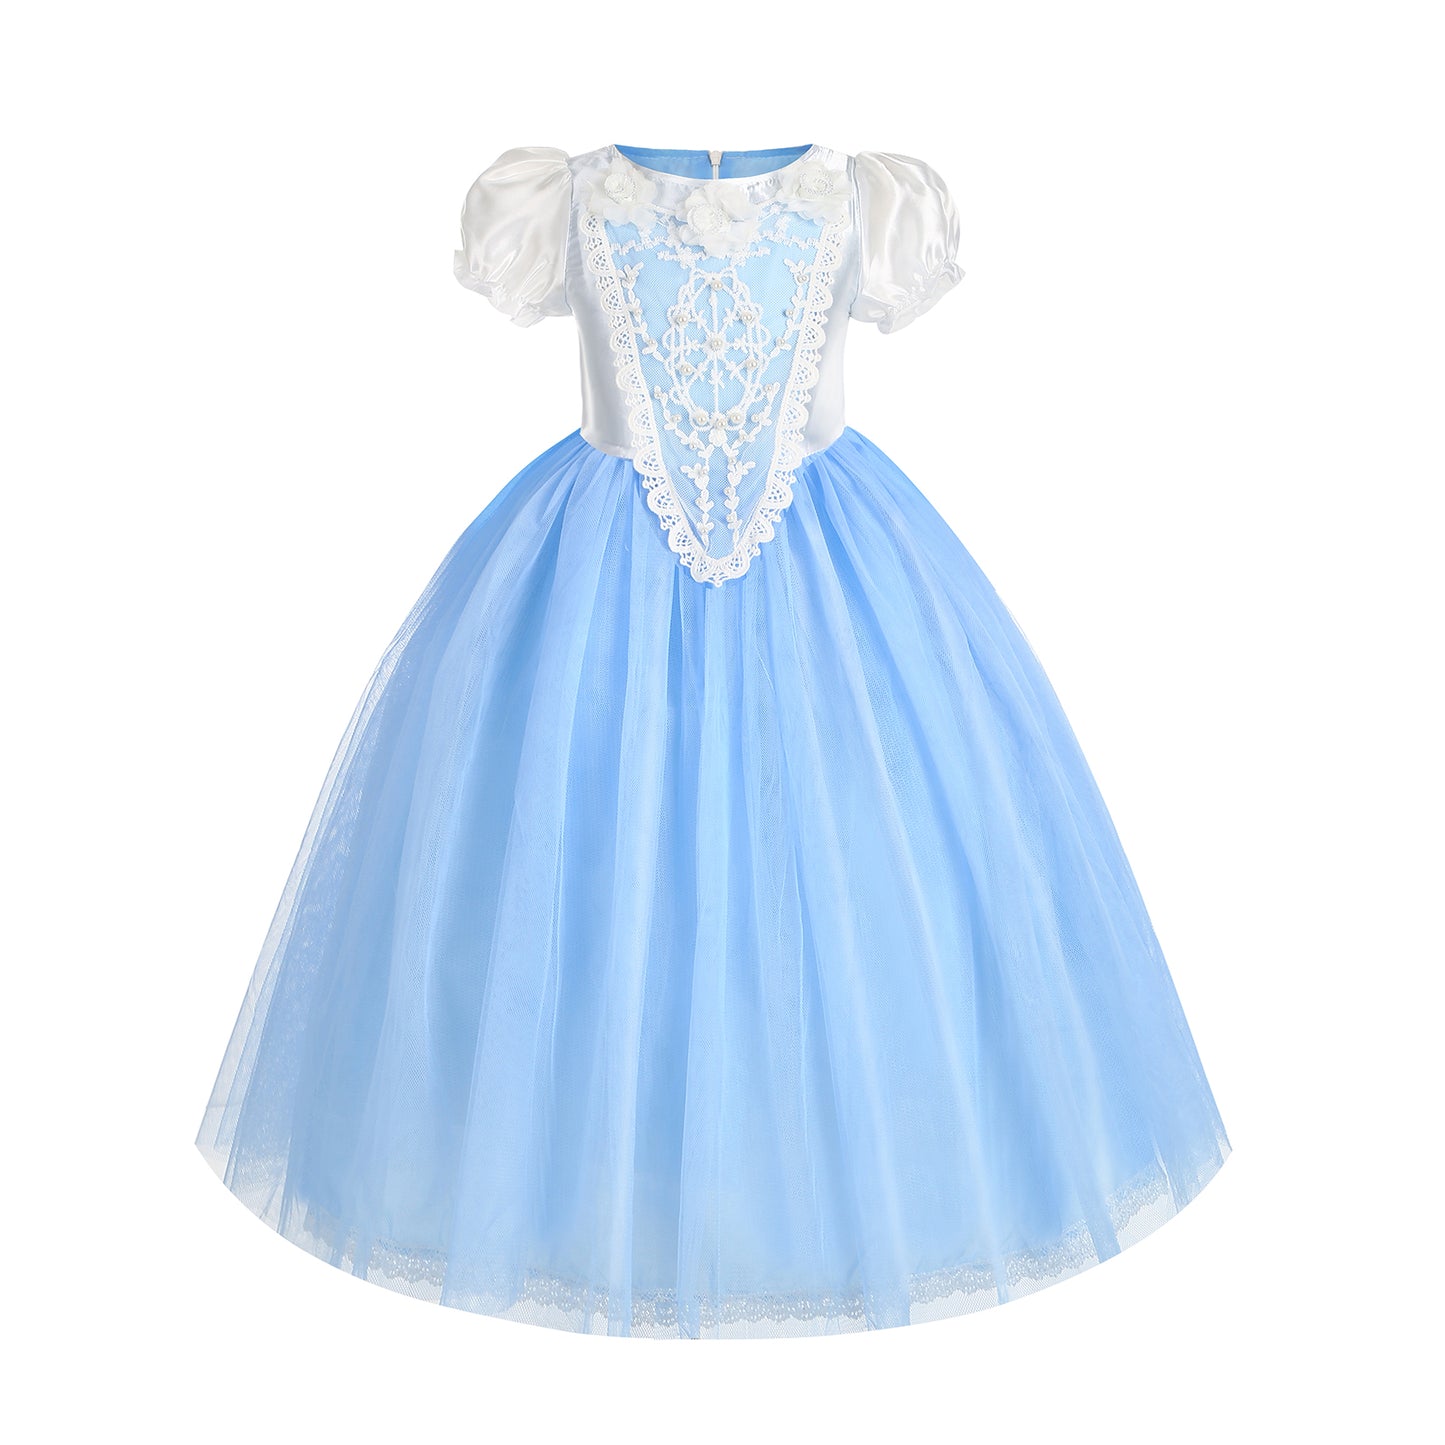 Foierp Halloween Costume Dress - Princess Elsa Dress with Cloak Crown Wand Light Blue